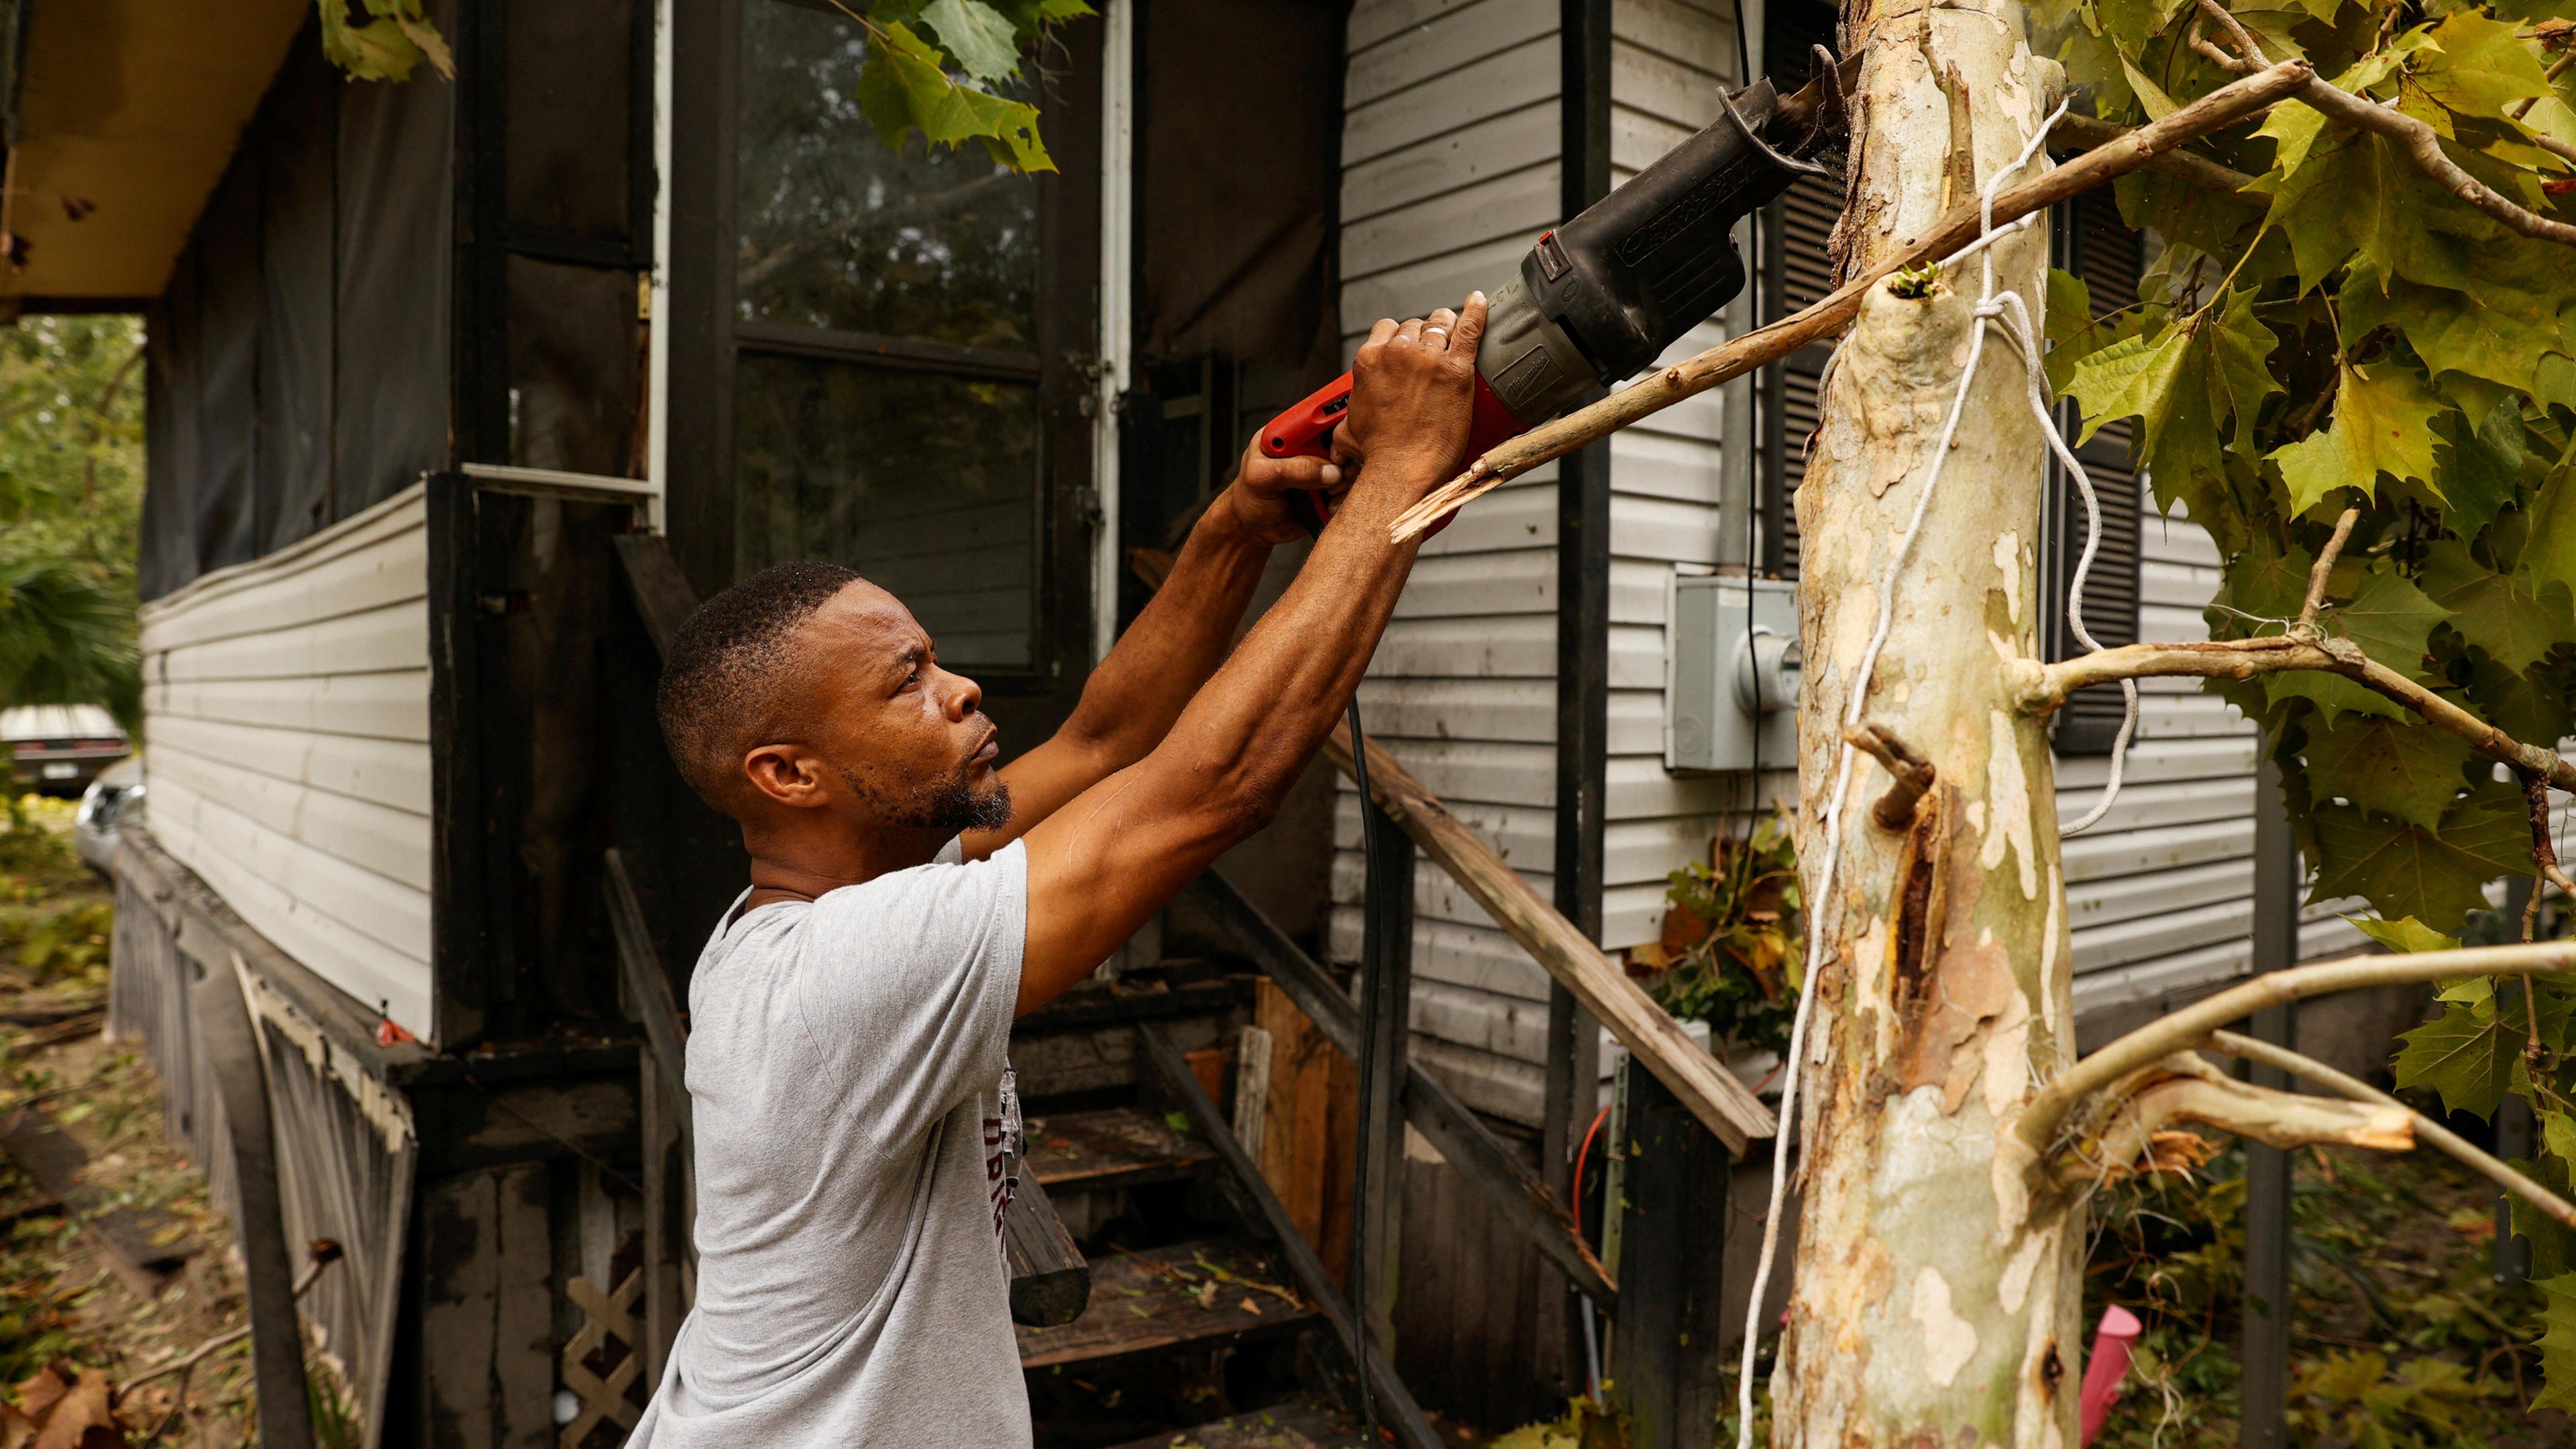 Hurrikan "Idalia" hat in Florida gewütet: Ein Mann zersägt einen Baum, der auf seine Haus gefallen ist.